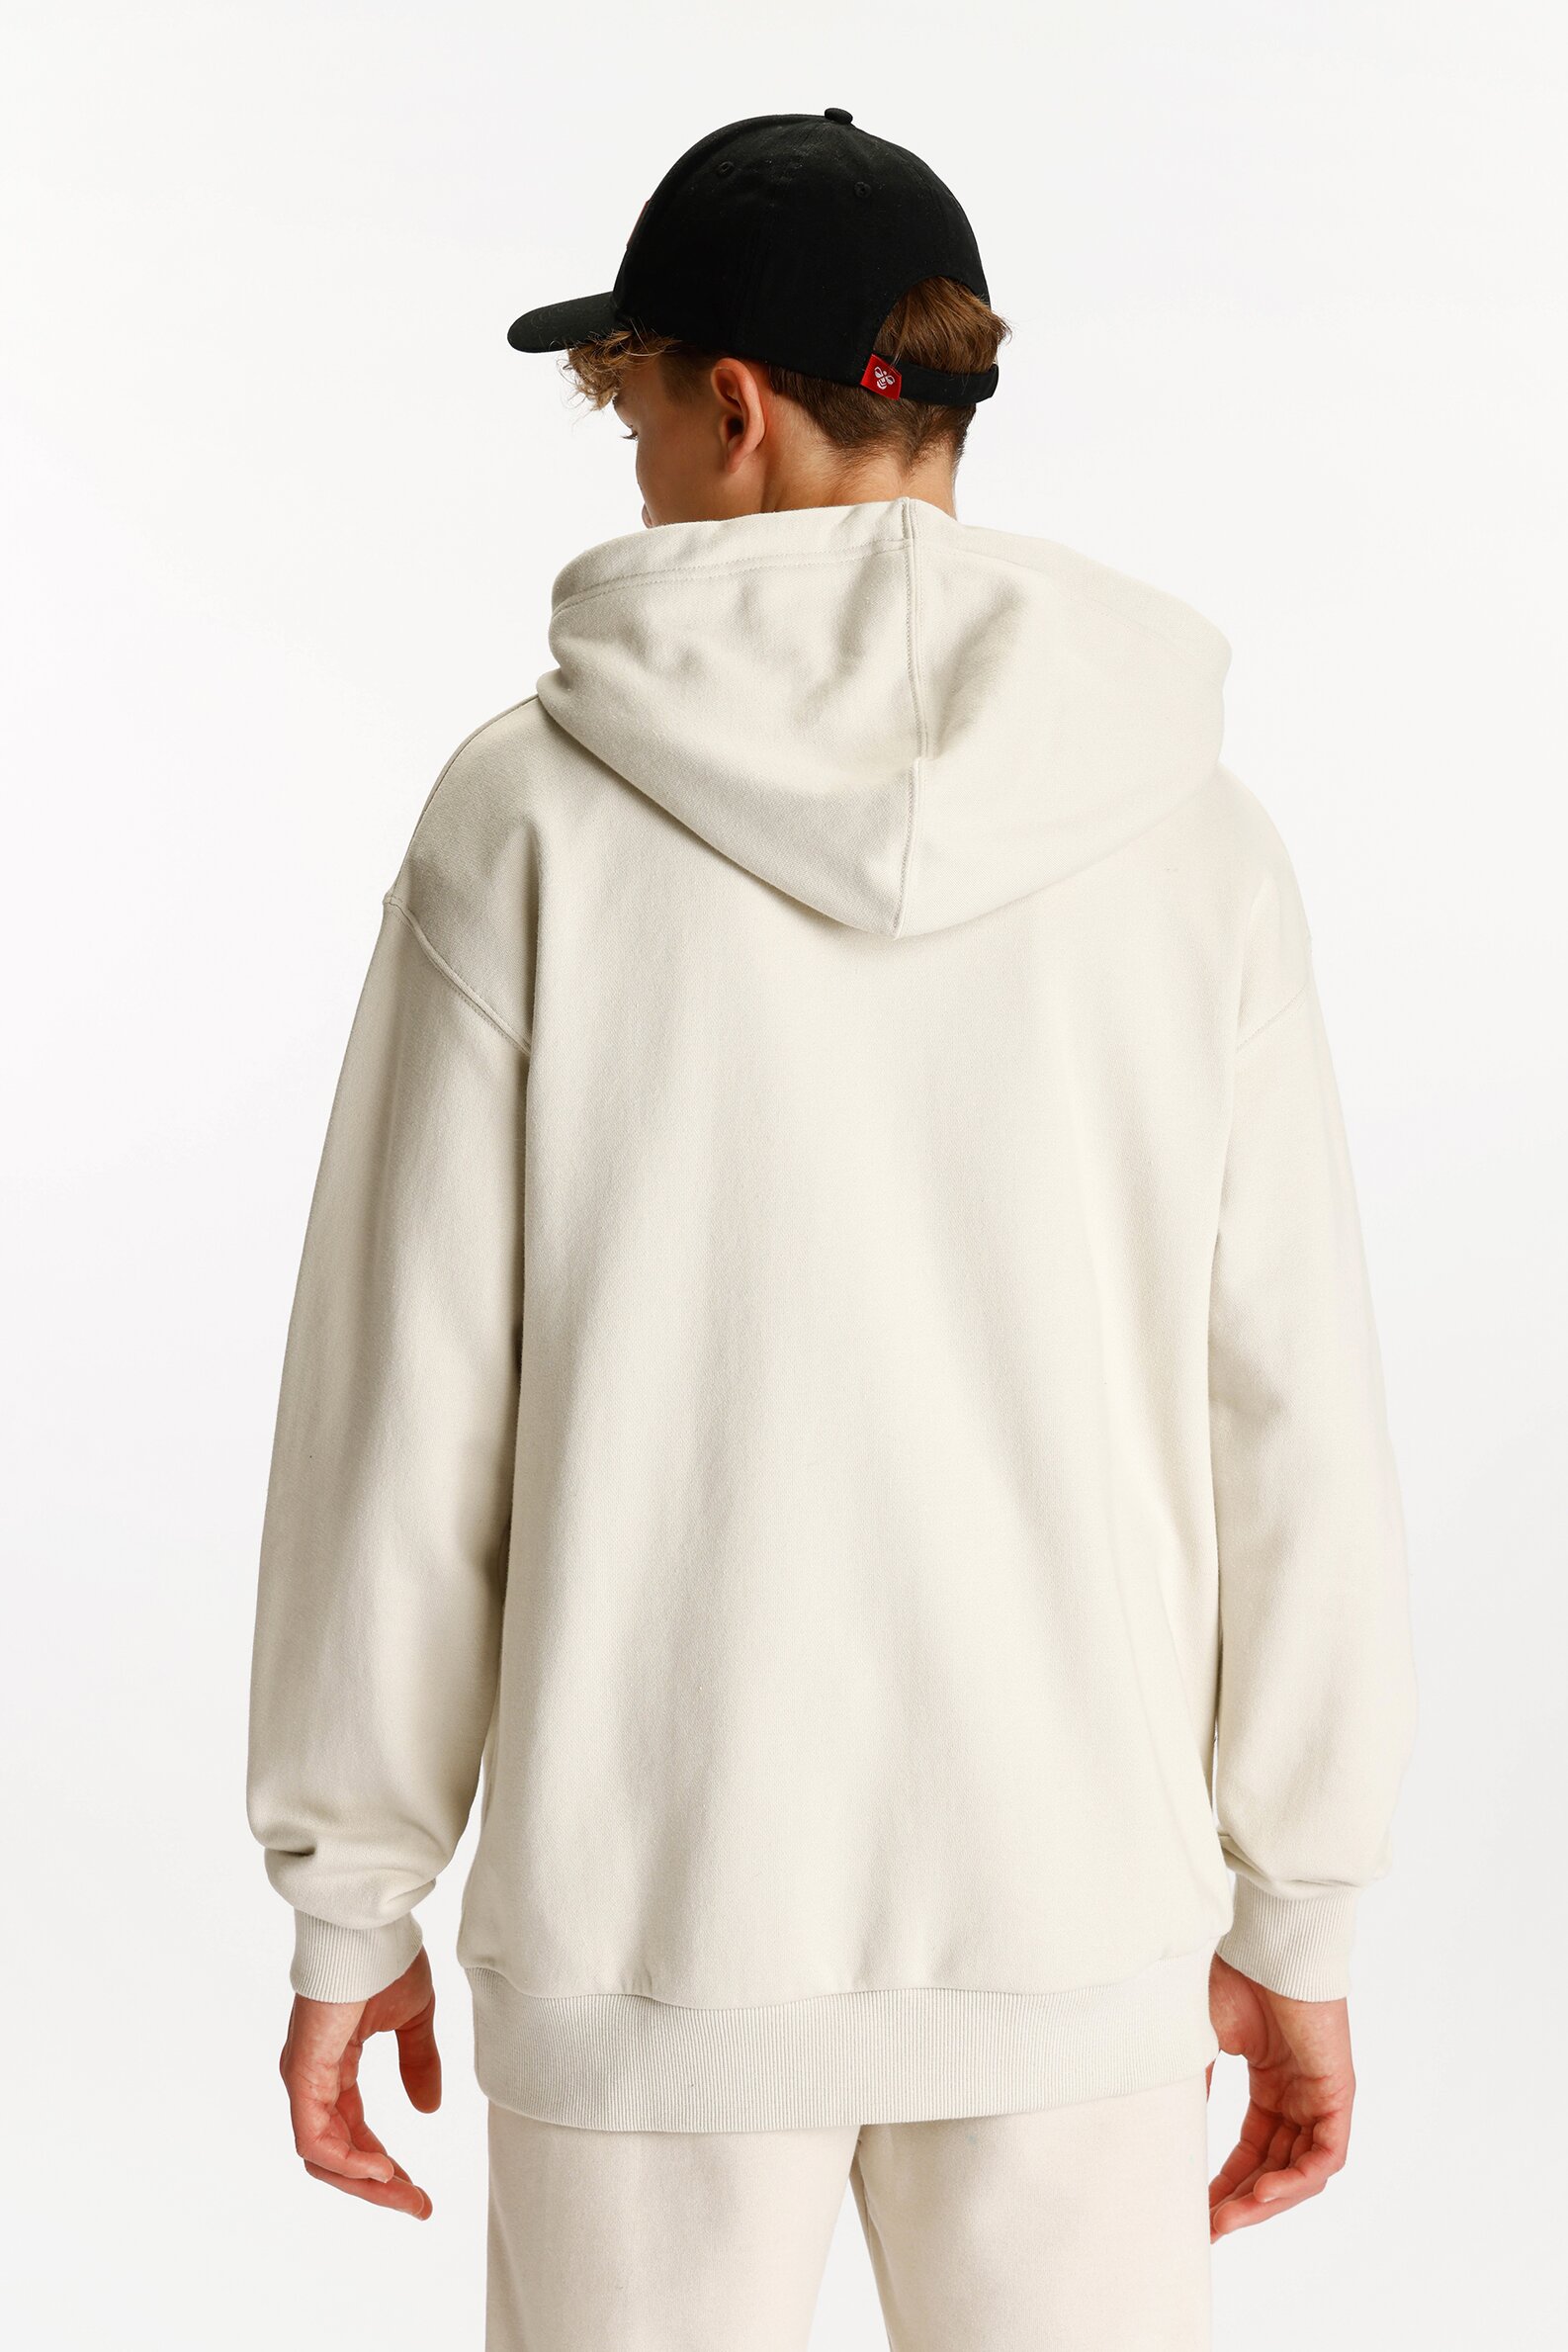 Hummel x Lefties hoodie - Sweatshirts - Clothing - TEEN BOY - Man 